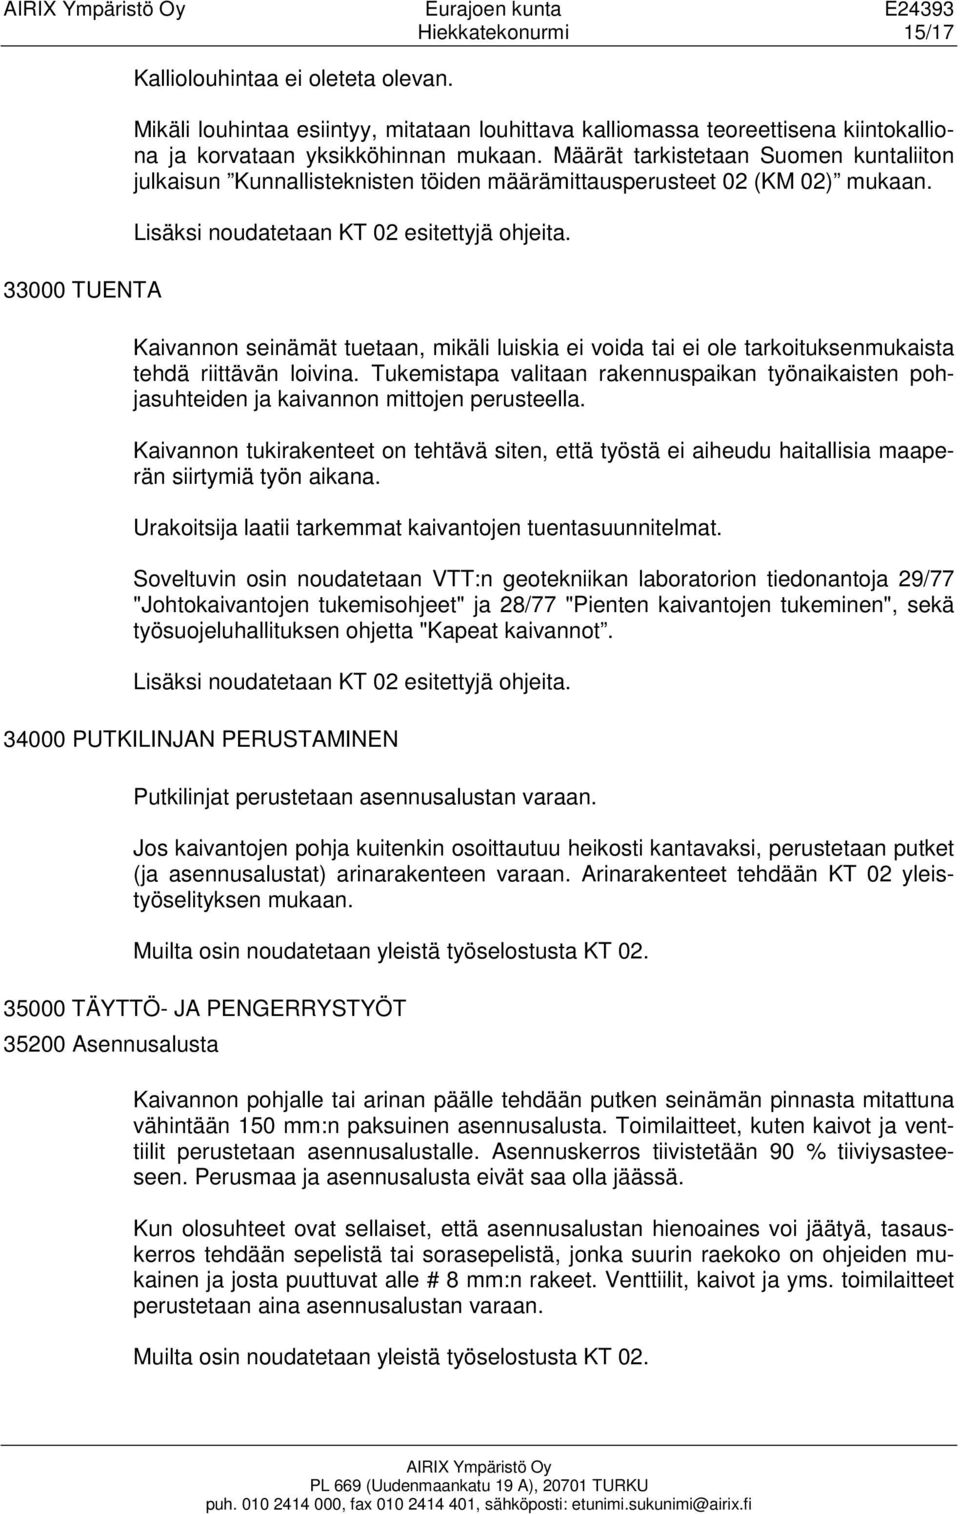 Määrät tarkistetaan Suomen kuntaliiton julkaisun Kunnallisteknisten töiden määrämittausperusteet 02 (KM 02) mukaan. Lisäksi noudatetaan KT 02 esitettyjä ohjeita.